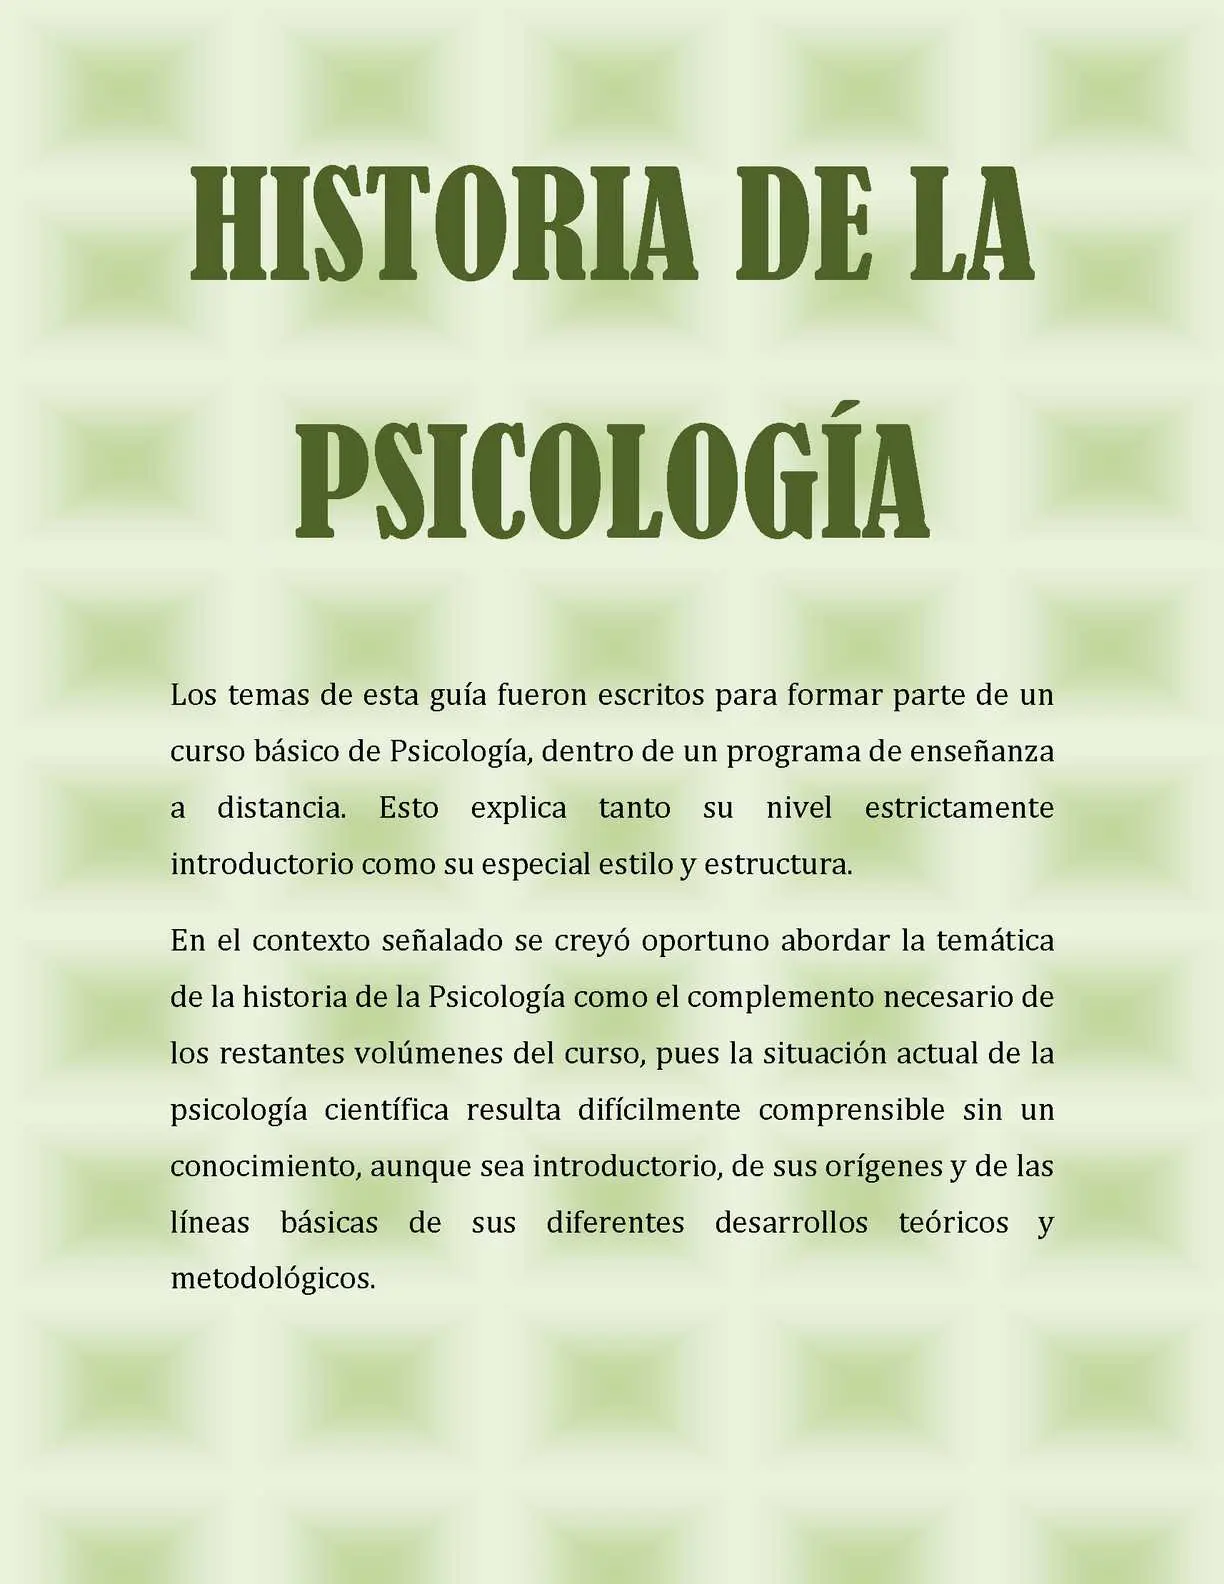 historia de la psicologia resumen - Cuándo y quién creó la psicología